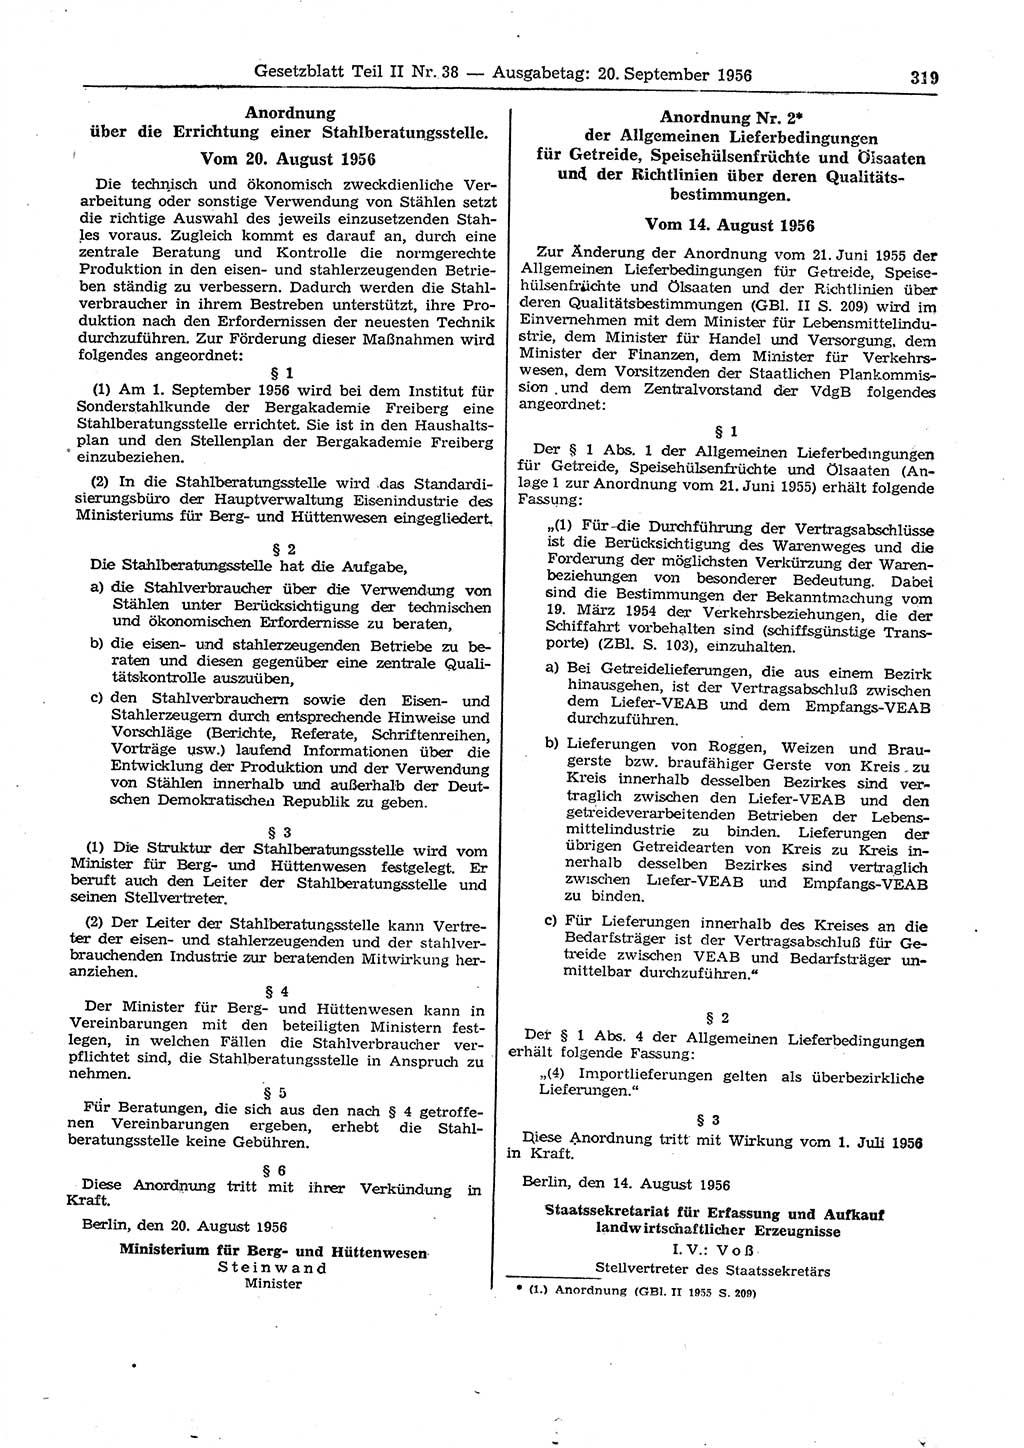 Gesetzblatt (GBl.) der Deutschen Demokratischen Republik (DDR) Teil ⅠⅠ 1956, Seite 319 (GBl. DDR ⅠⅠ 1956, S. 319)